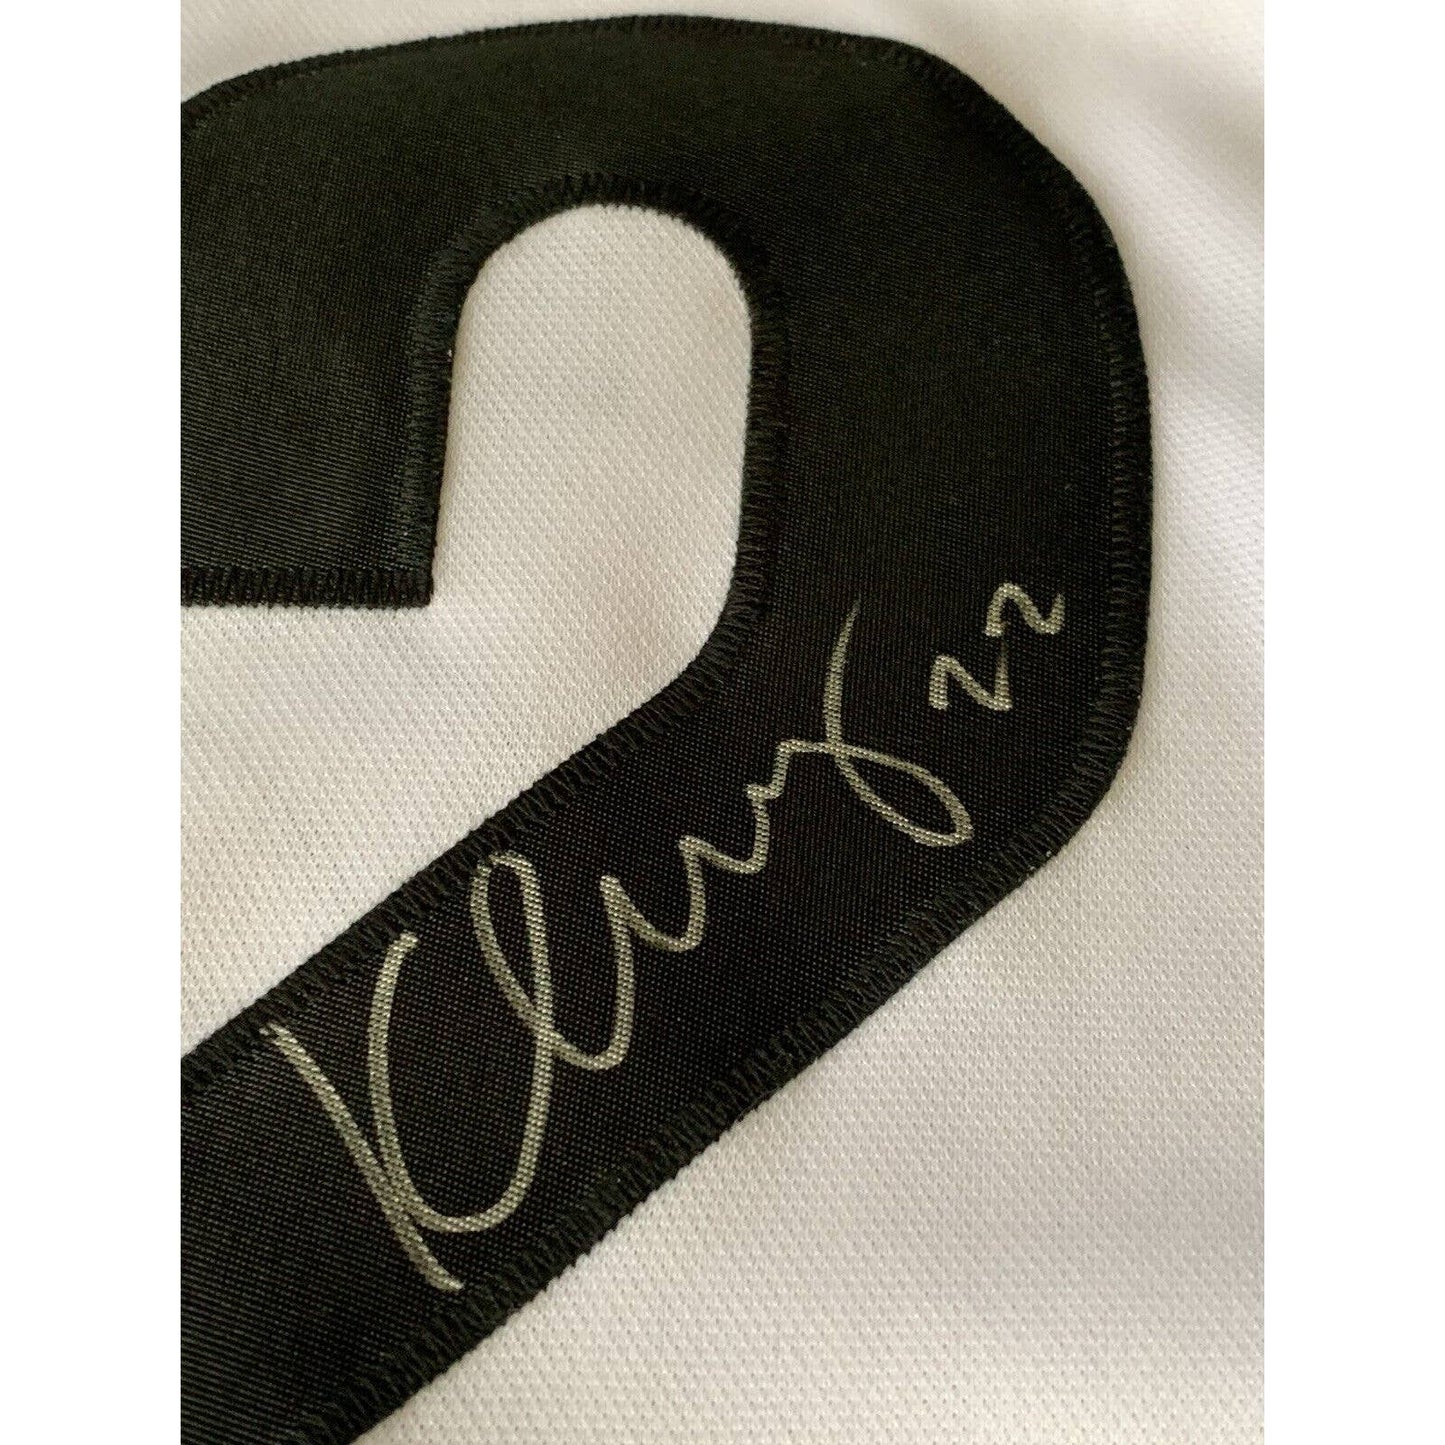 Meghan Klingenberg Autographed/Signed Jersey JSA Sticker Team USA Megan READ - TreasuresEvolved